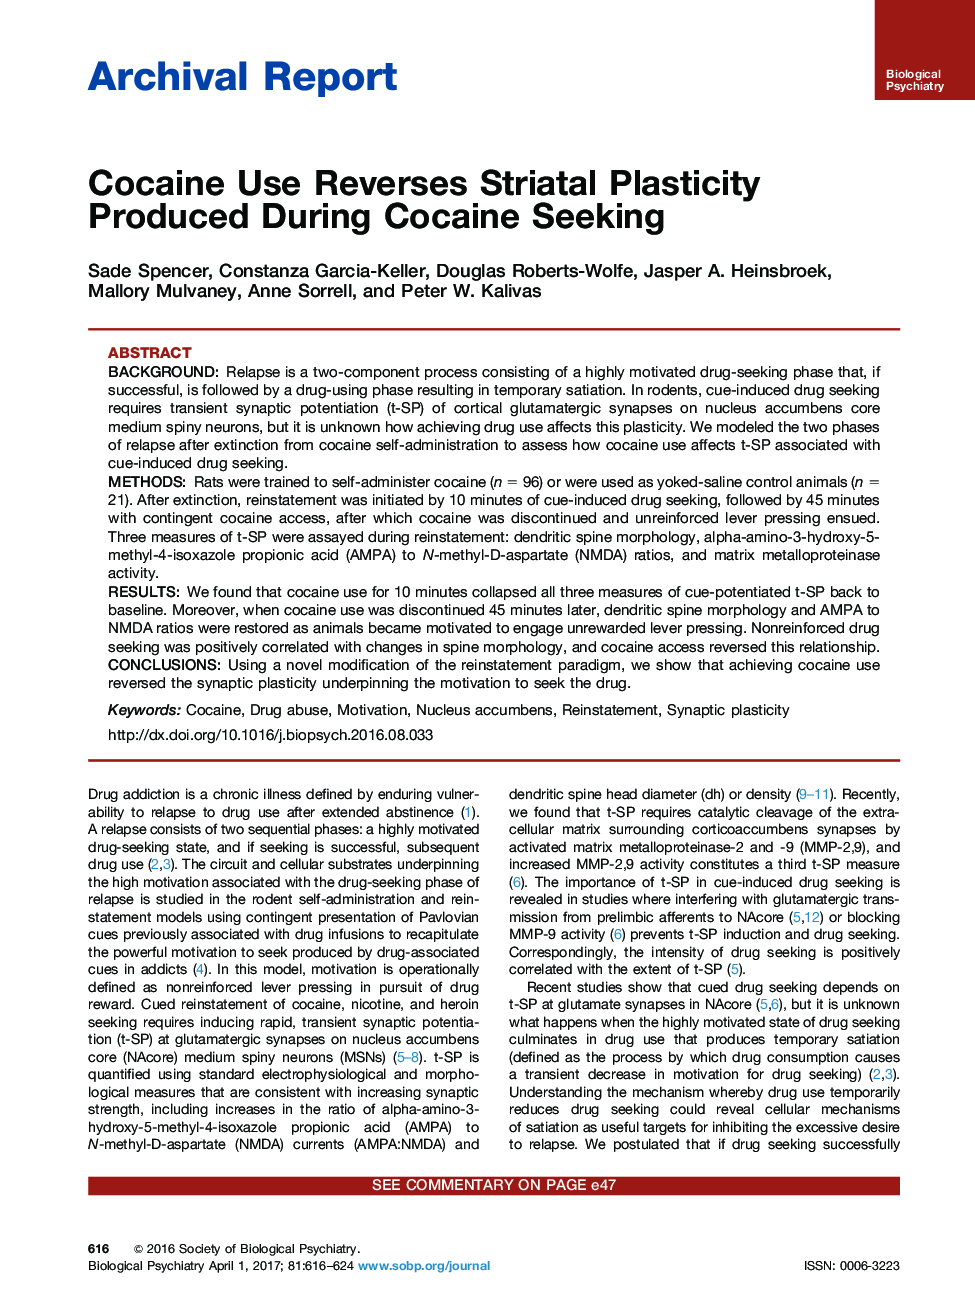 گزارش بایگانی کاکائین از معکوس شدن پلاستیسیته استریاتیت در طول کوکائین جستجو می کند 